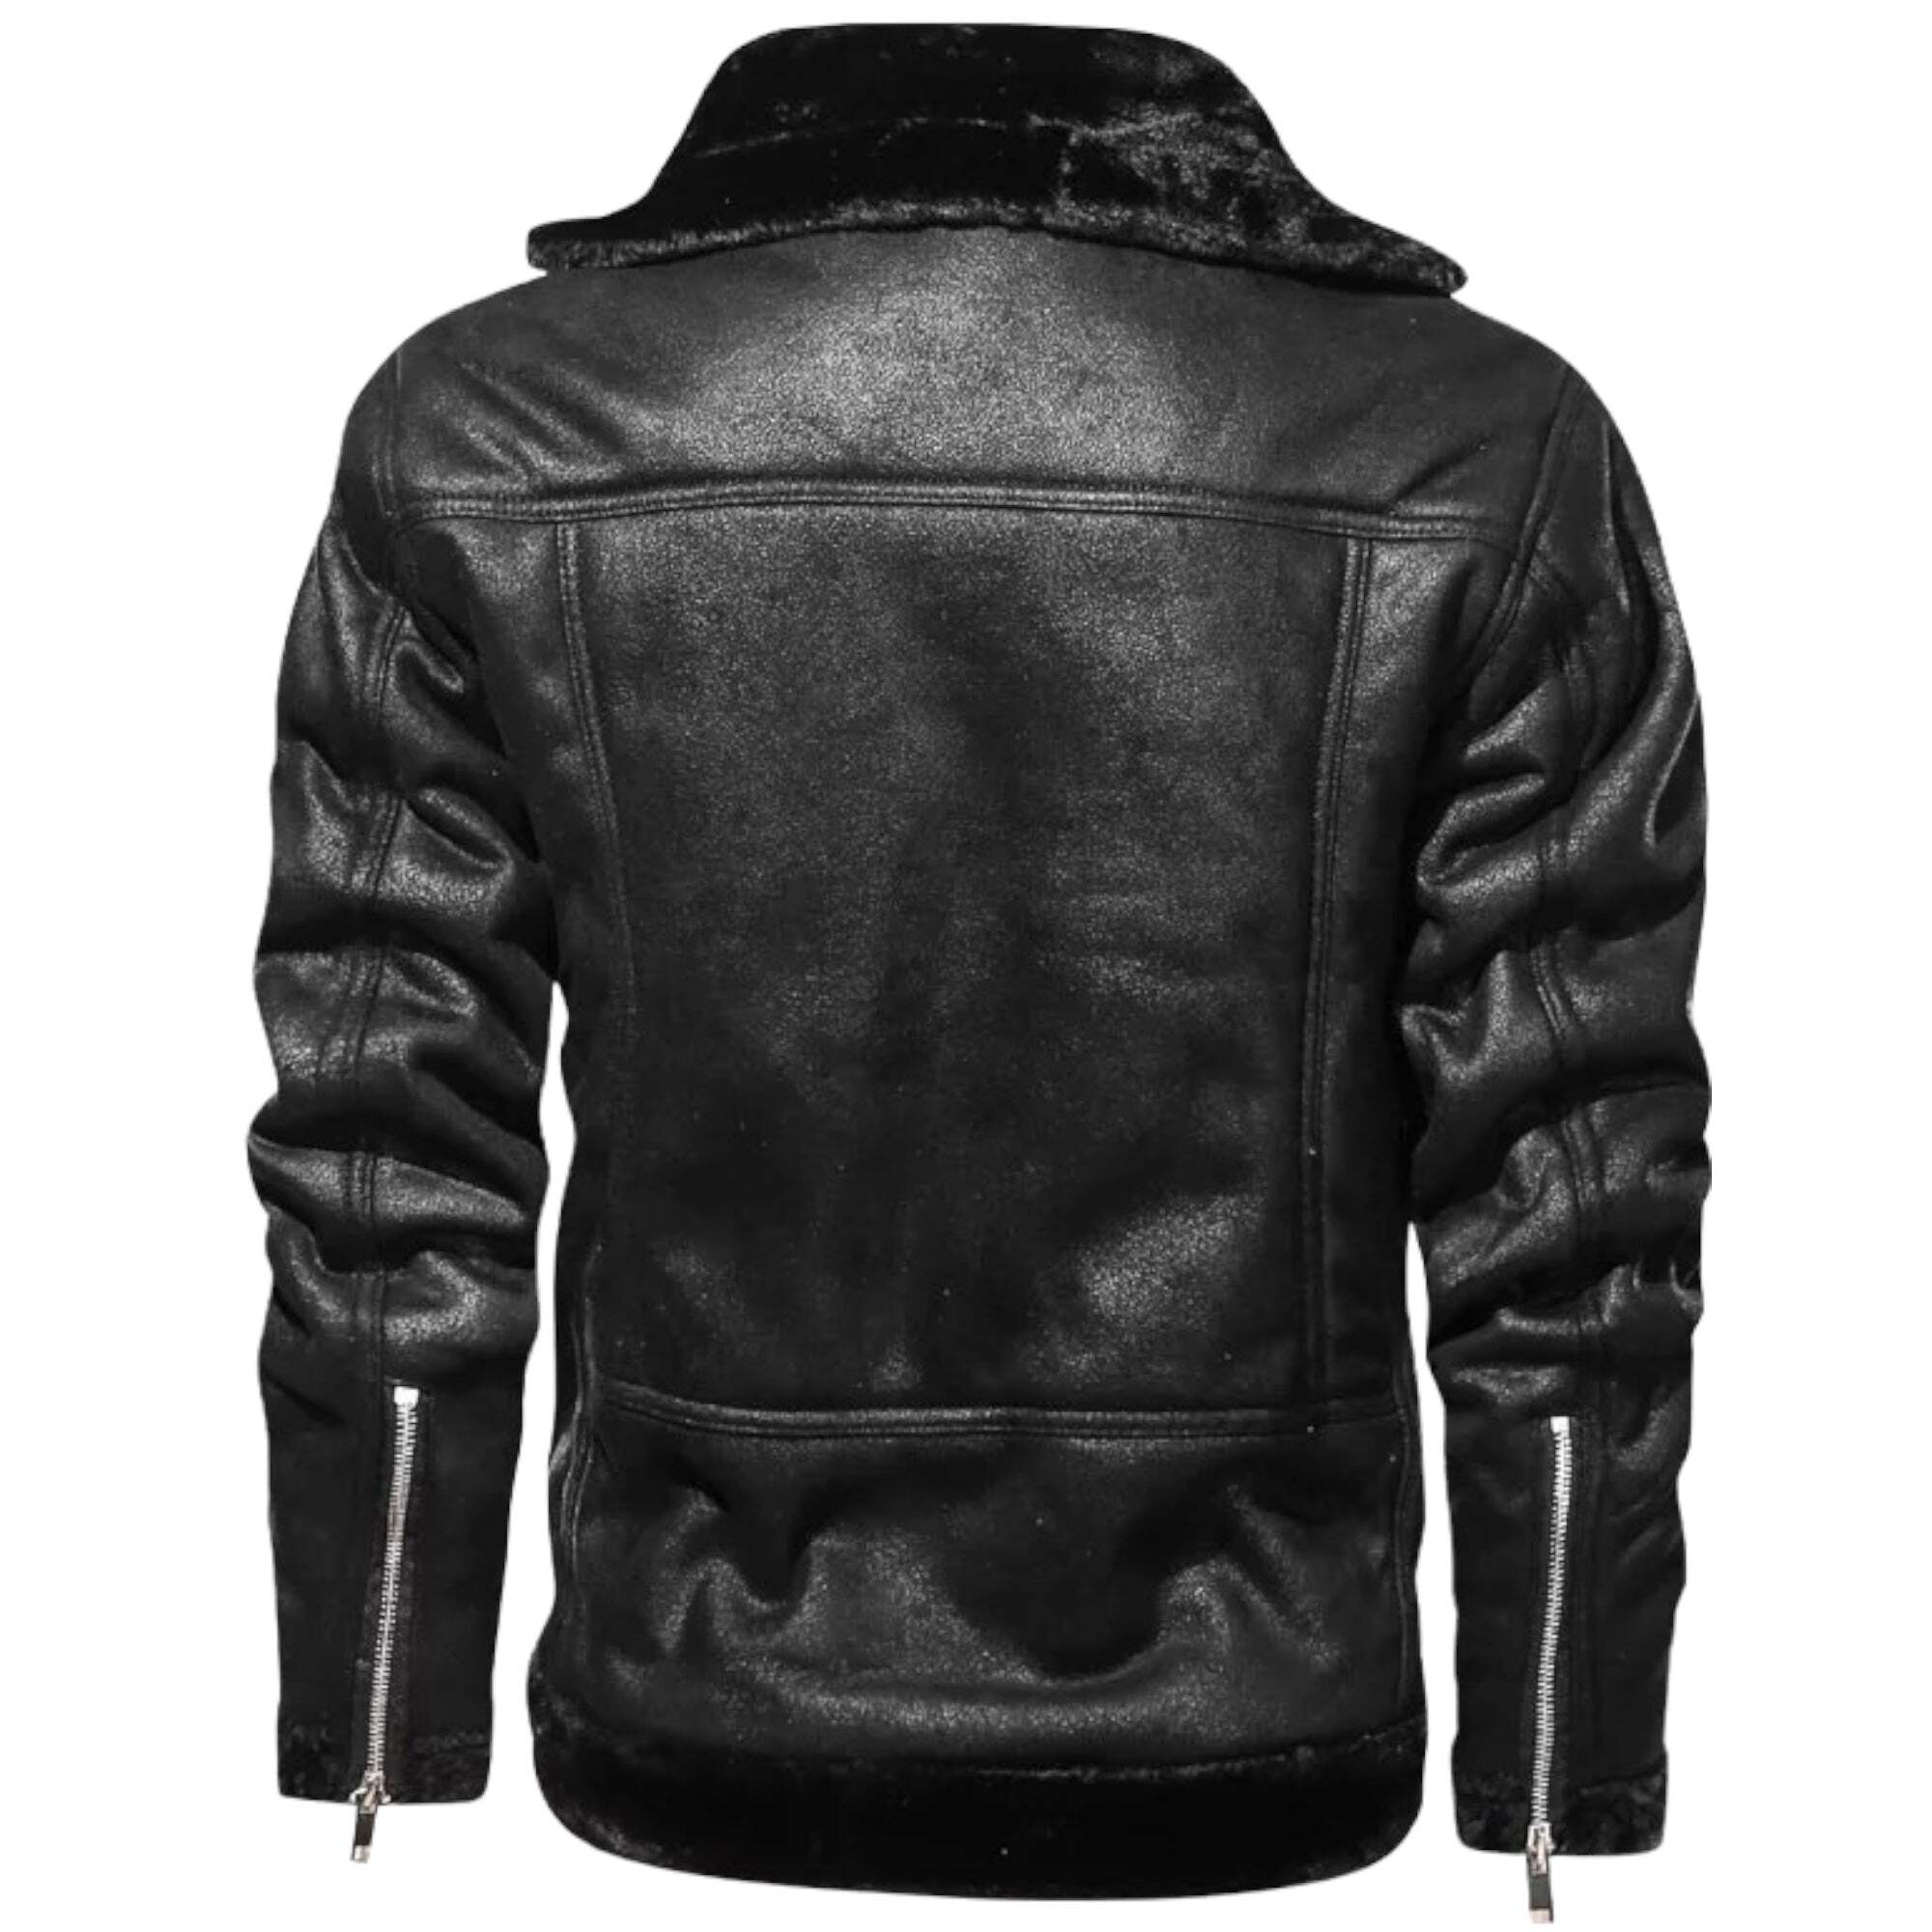 'Cyborg Swag' Leather Jacket